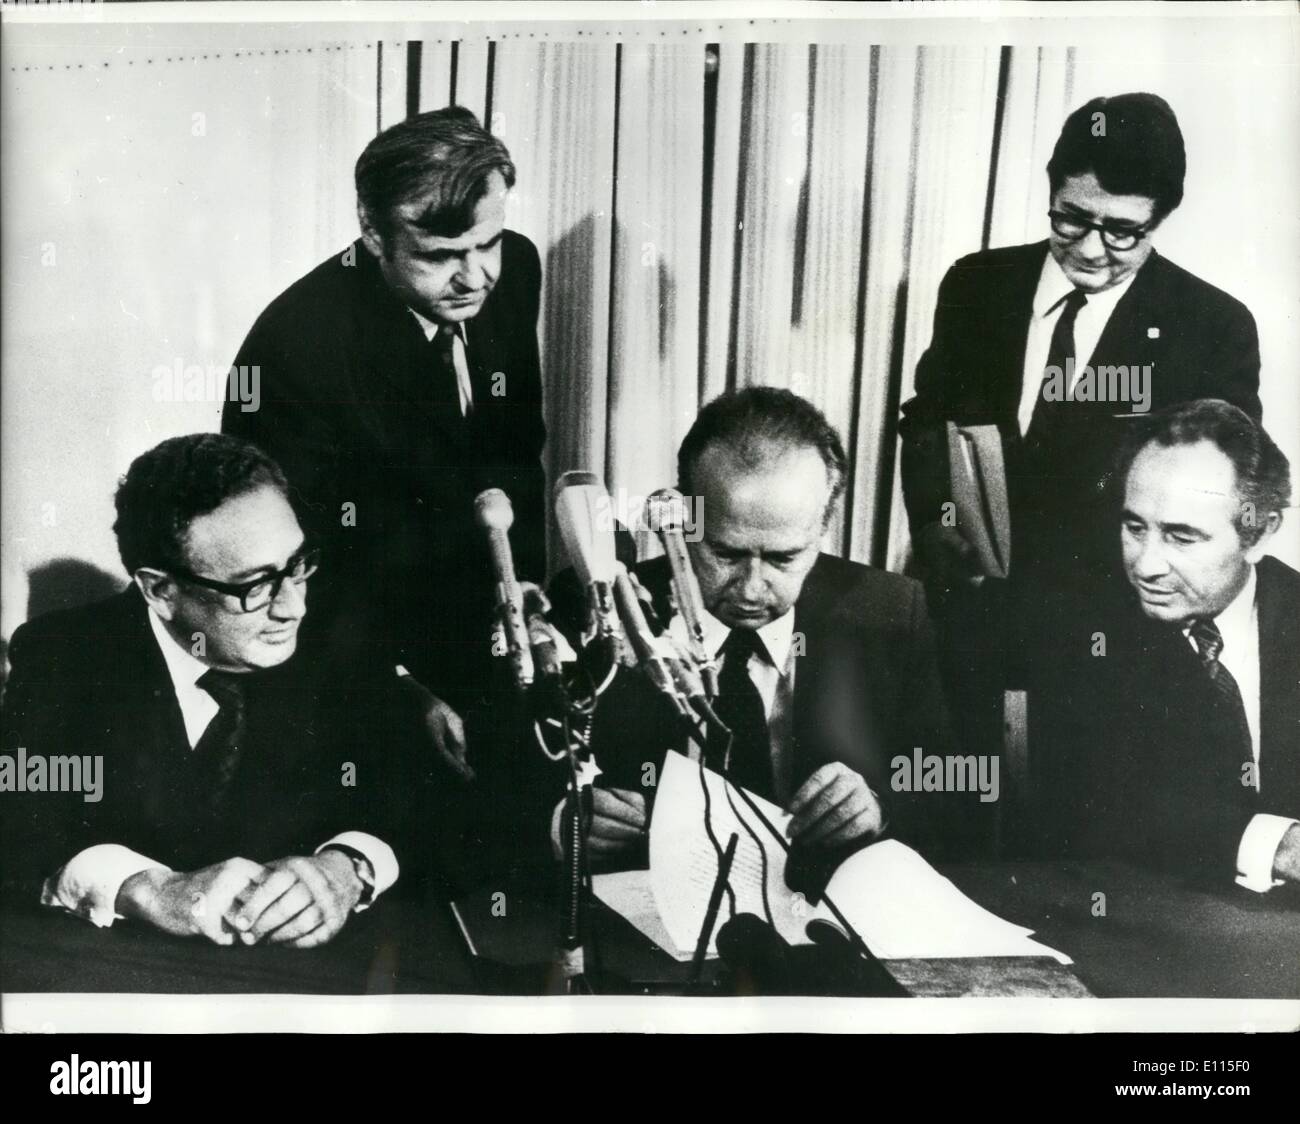 Septembre 09, 1975 - Le Premier Ministre israélien, paraphe le Israël - Egypte Accord de paix provisoire. Photo montre Itzhak Rabin, le Premier Ministre israélien, paraphe de l'accord intérimaire - Égypte Israël à Jérusalem, surveillée par le négociateur, Henry Kissinger (à gauche) Banque D'Images